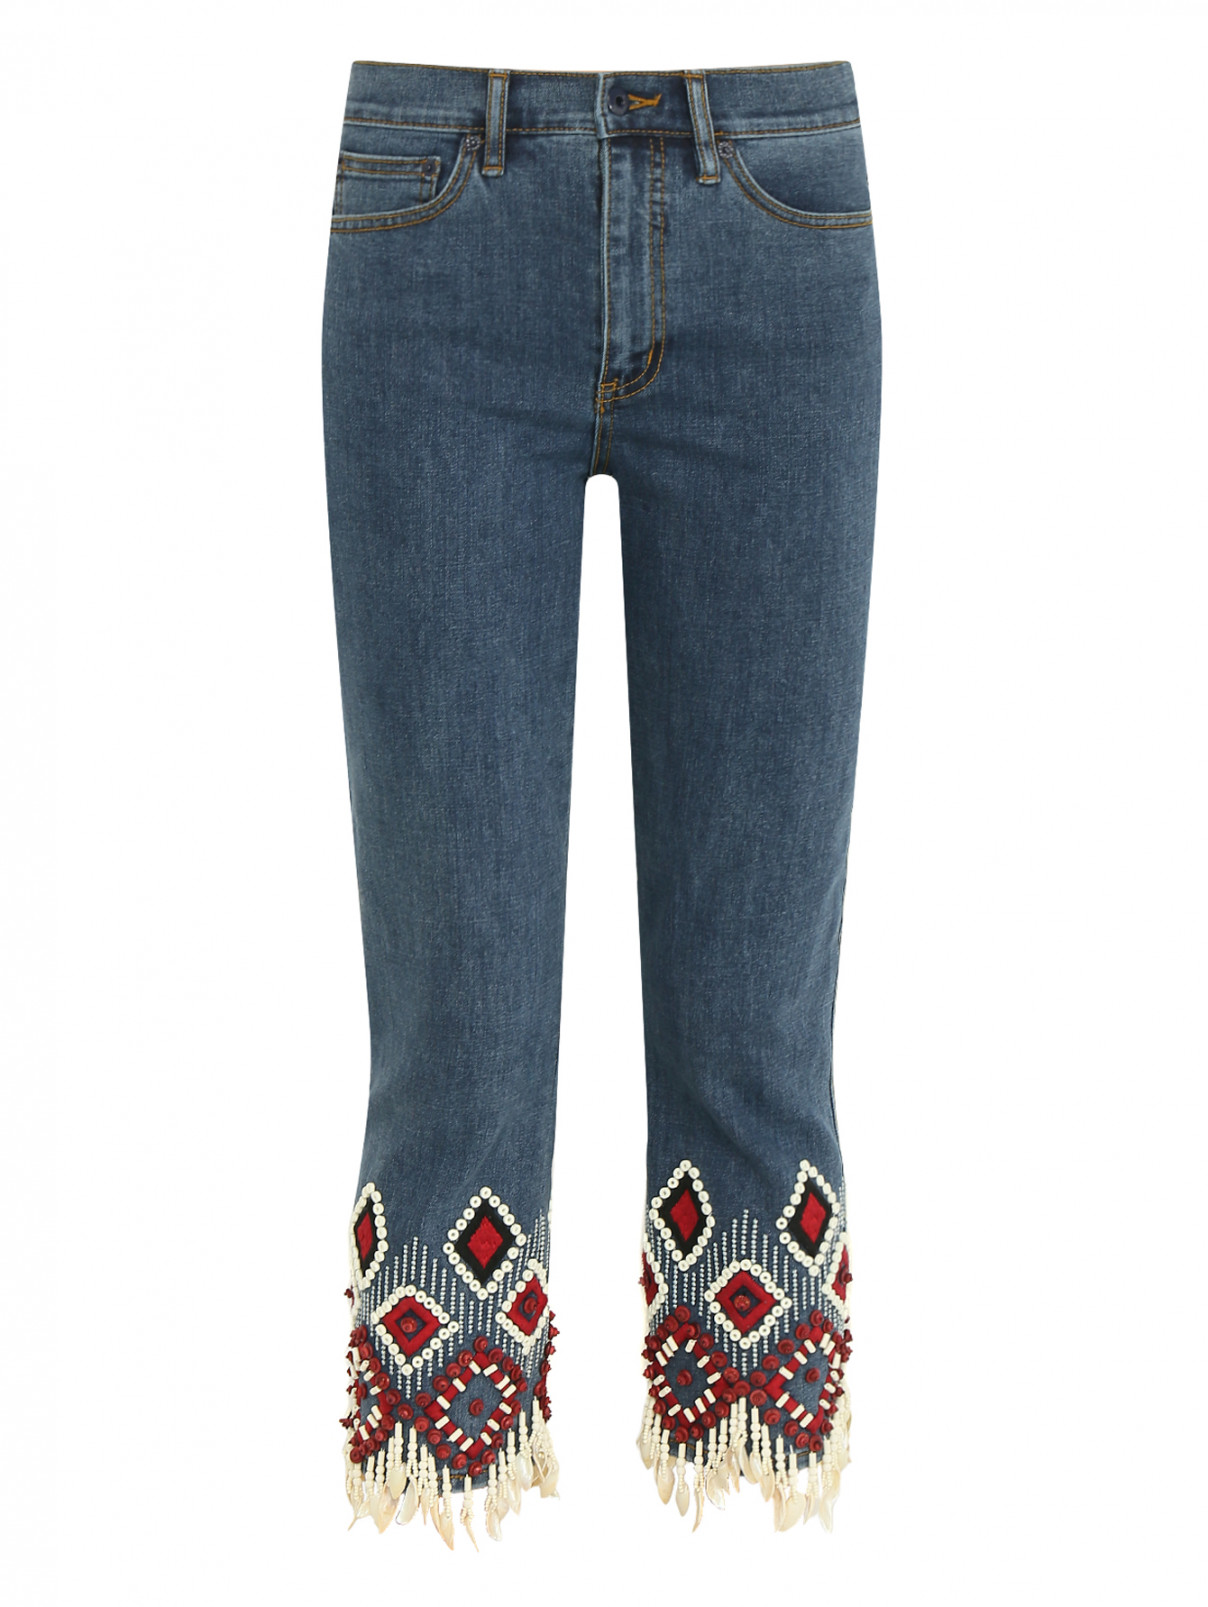 Укороченные джинсы с декоративной отделкой Tory Burch  –  Общий вид  – Цвет:  Синий